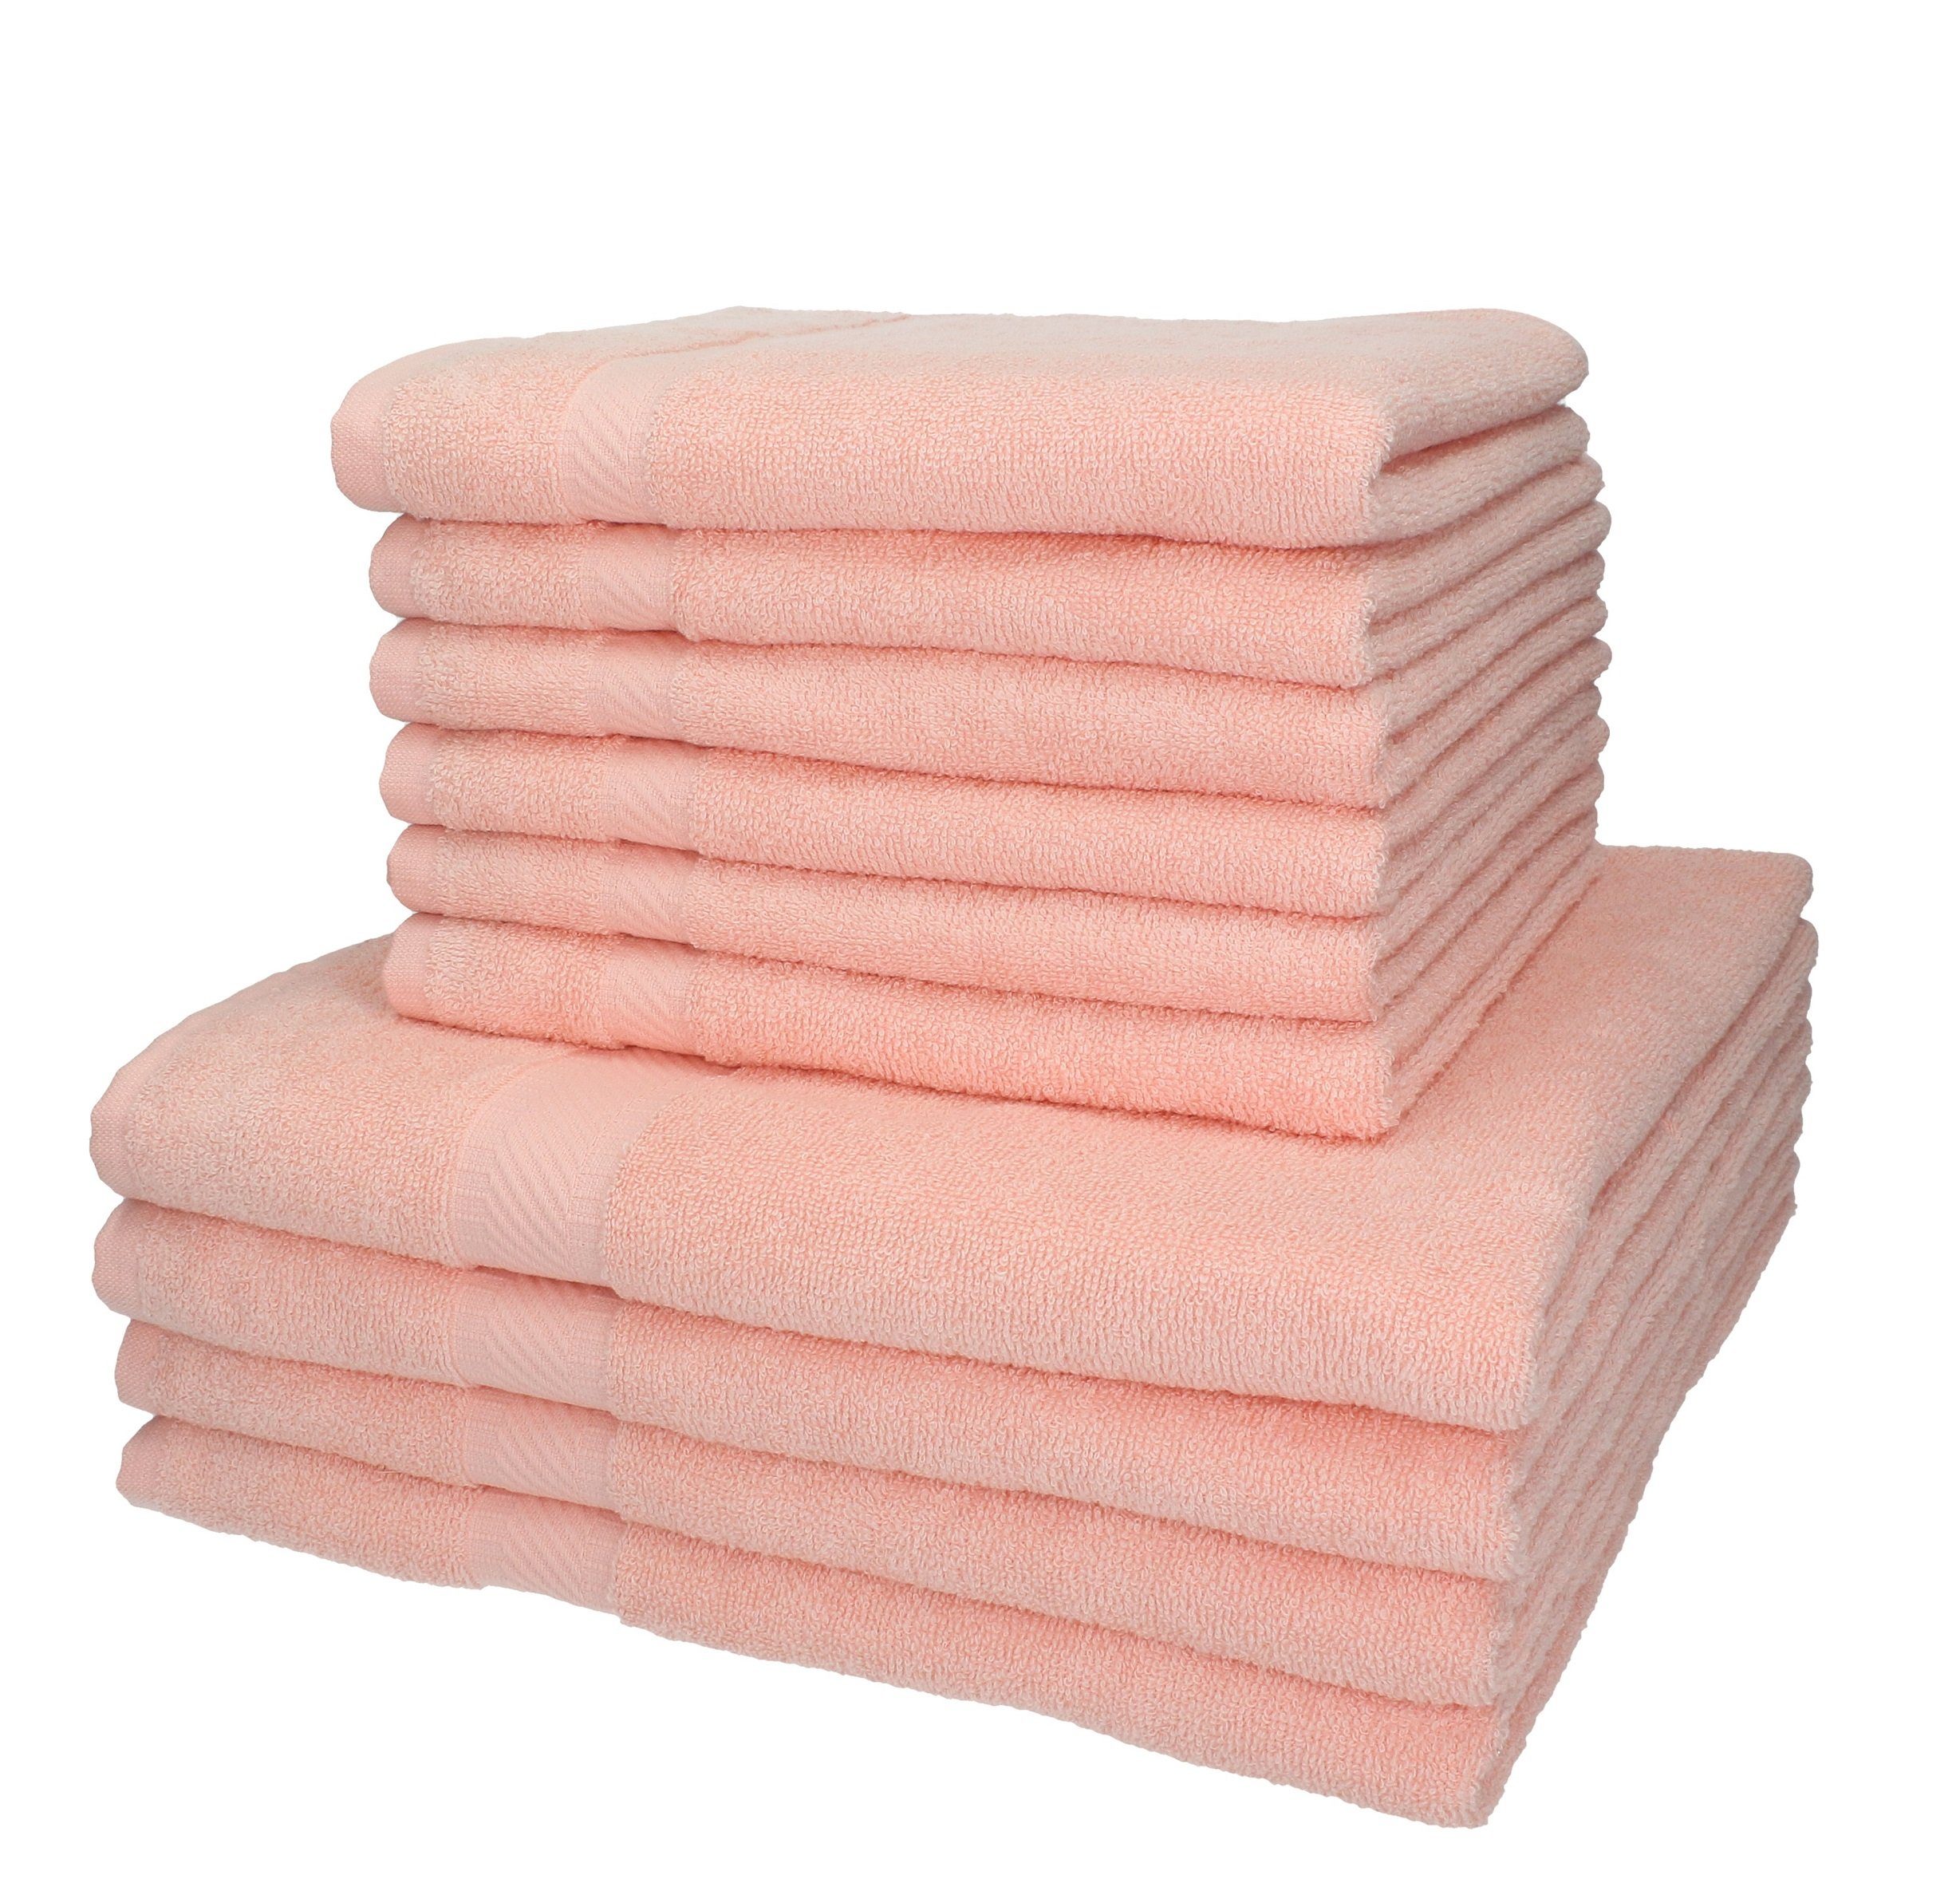 Betz Handtuch Set 10-TLG. Handtuch-Set Palermo Farbe apricot, 100% Baumwolle